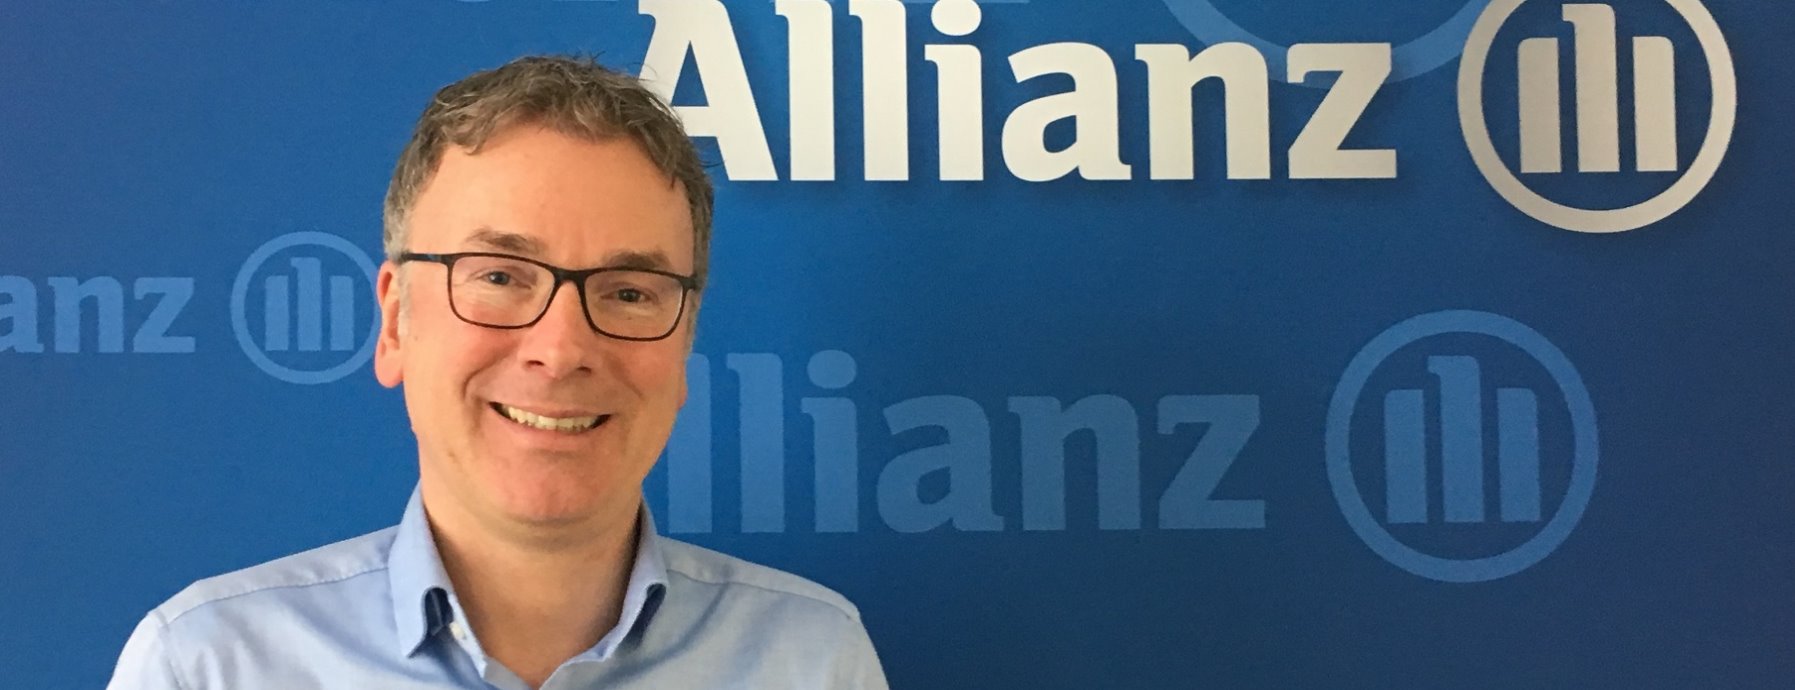 Allianz Versicherung Marc Bornemann Freiburg im Breisgau - Allianz Freiburg